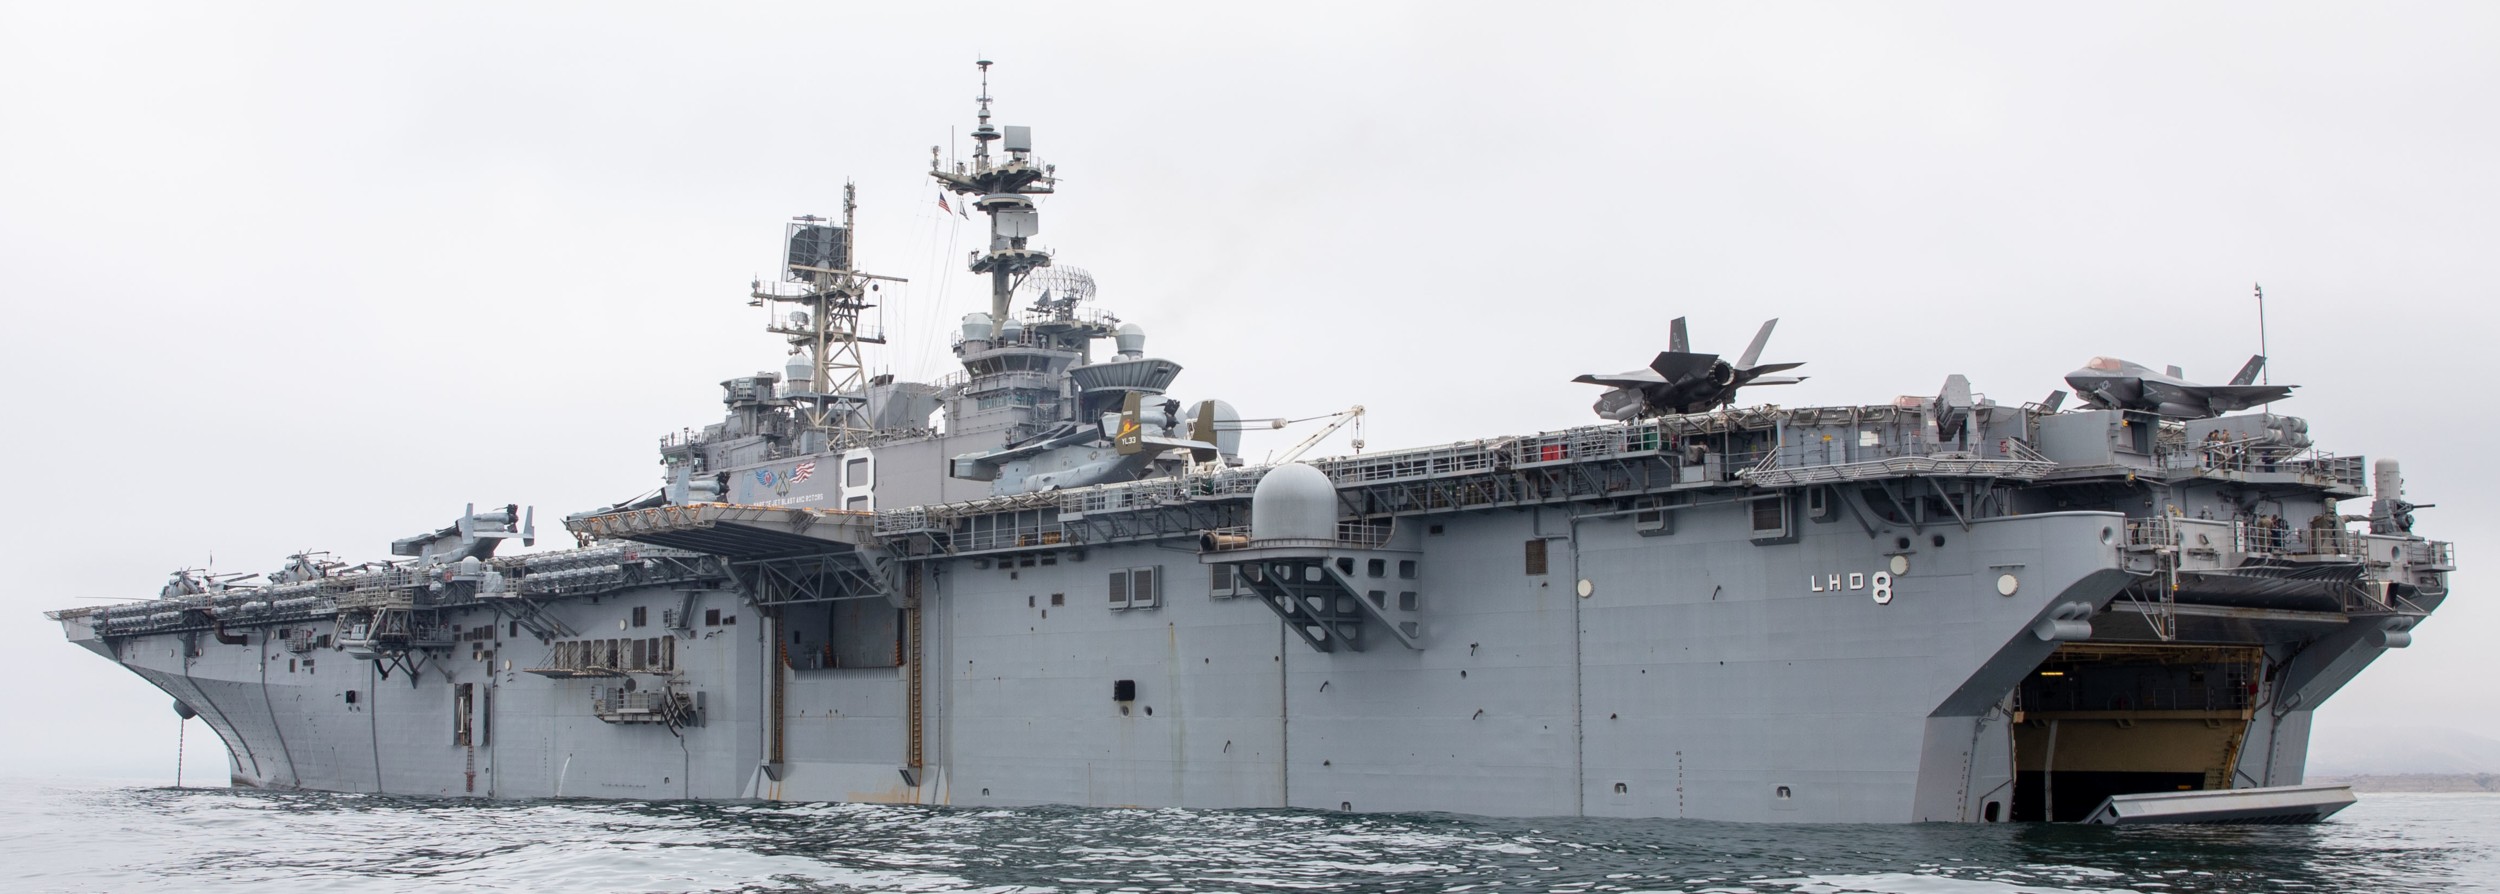 lhd-8 uss makin island amphibious assault ship landing helicopter dock us navy pacific ocean 162